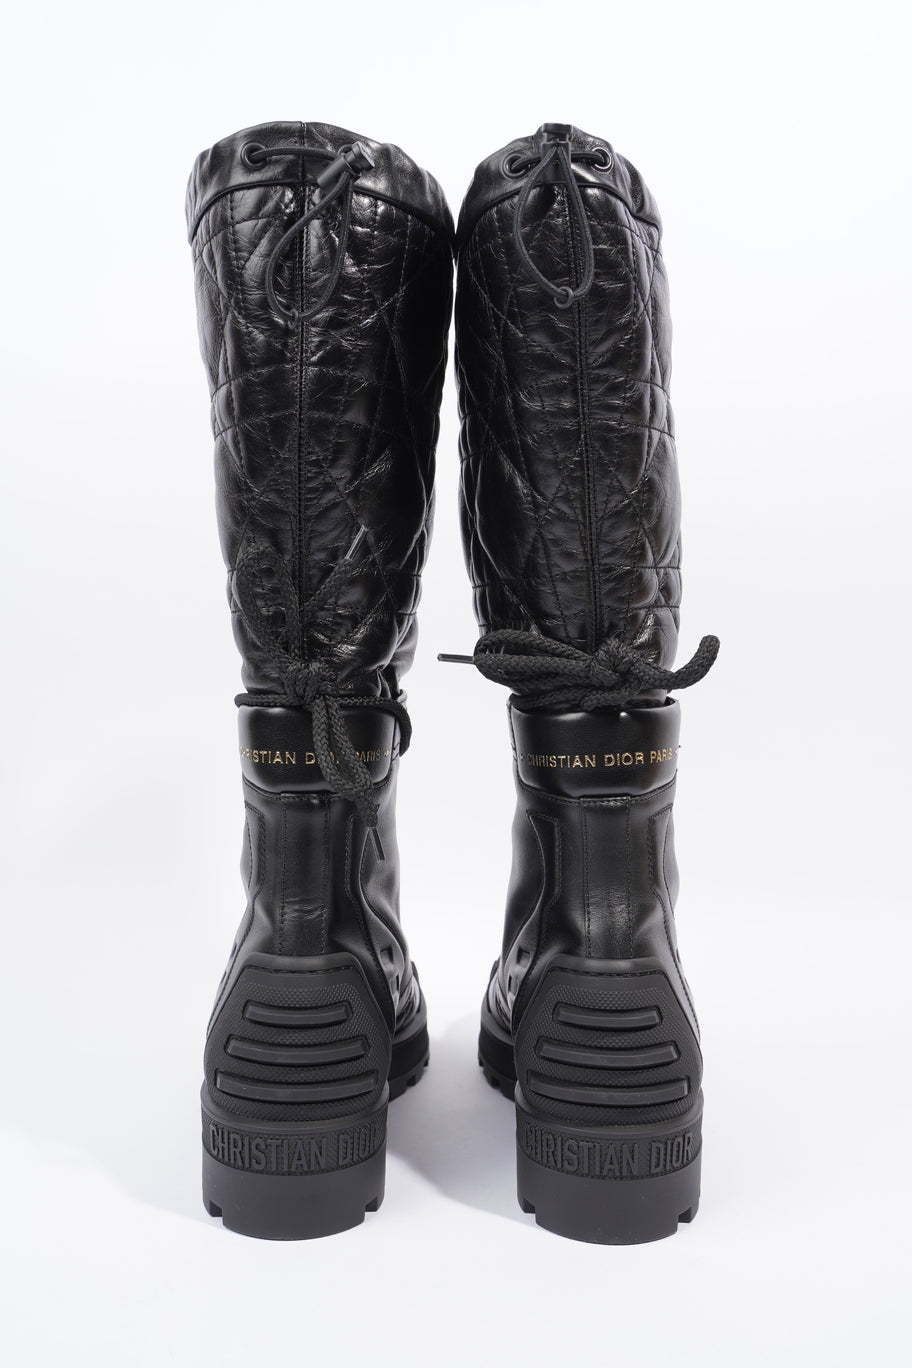 Boots Black Leather EU 39 UK 6 Image 6